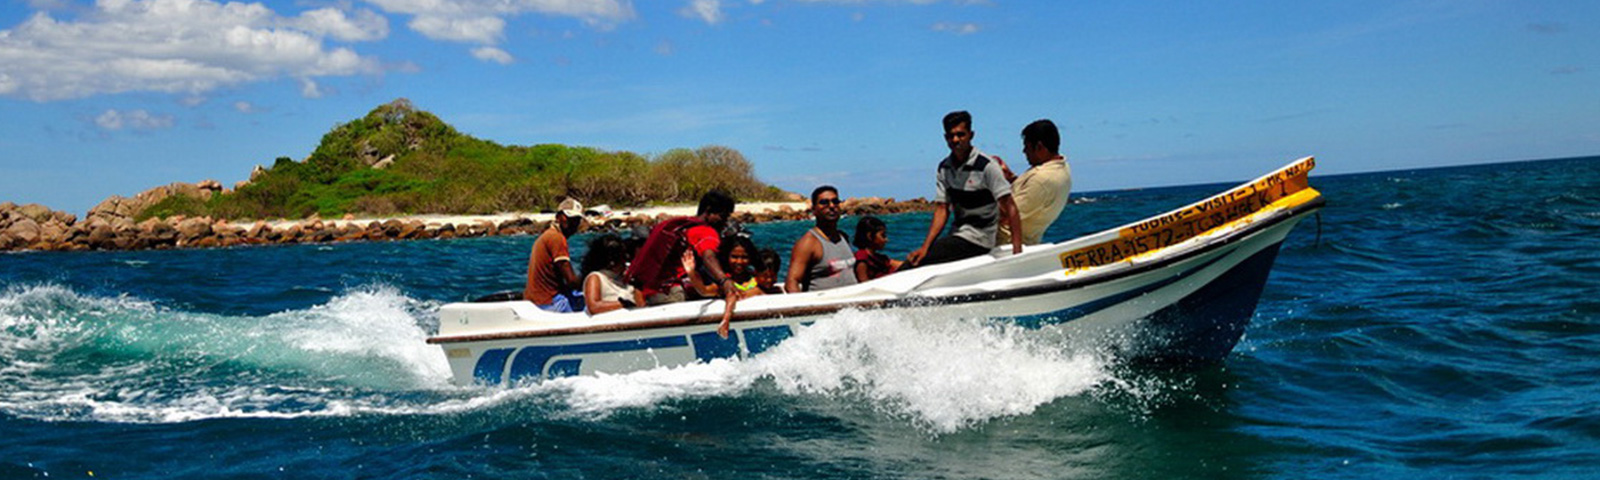 Boat Ride in Sri Lanka